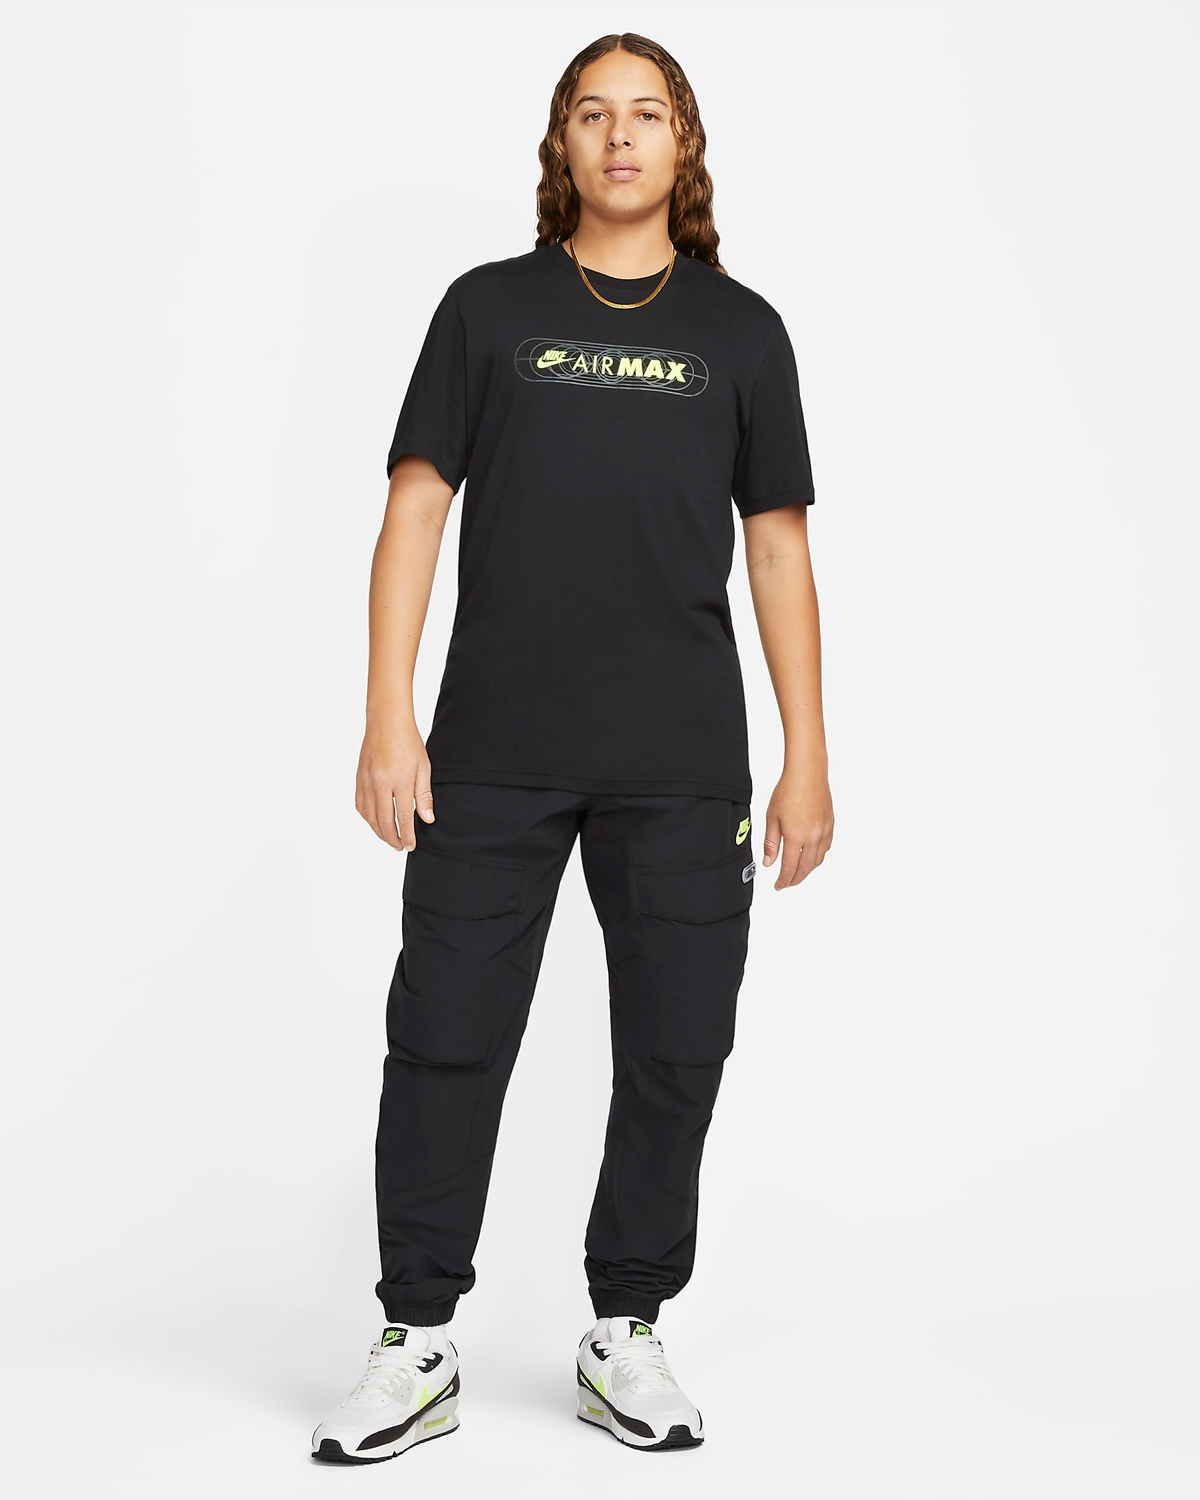 Nike-Air-Max-T-Shirt-Volt